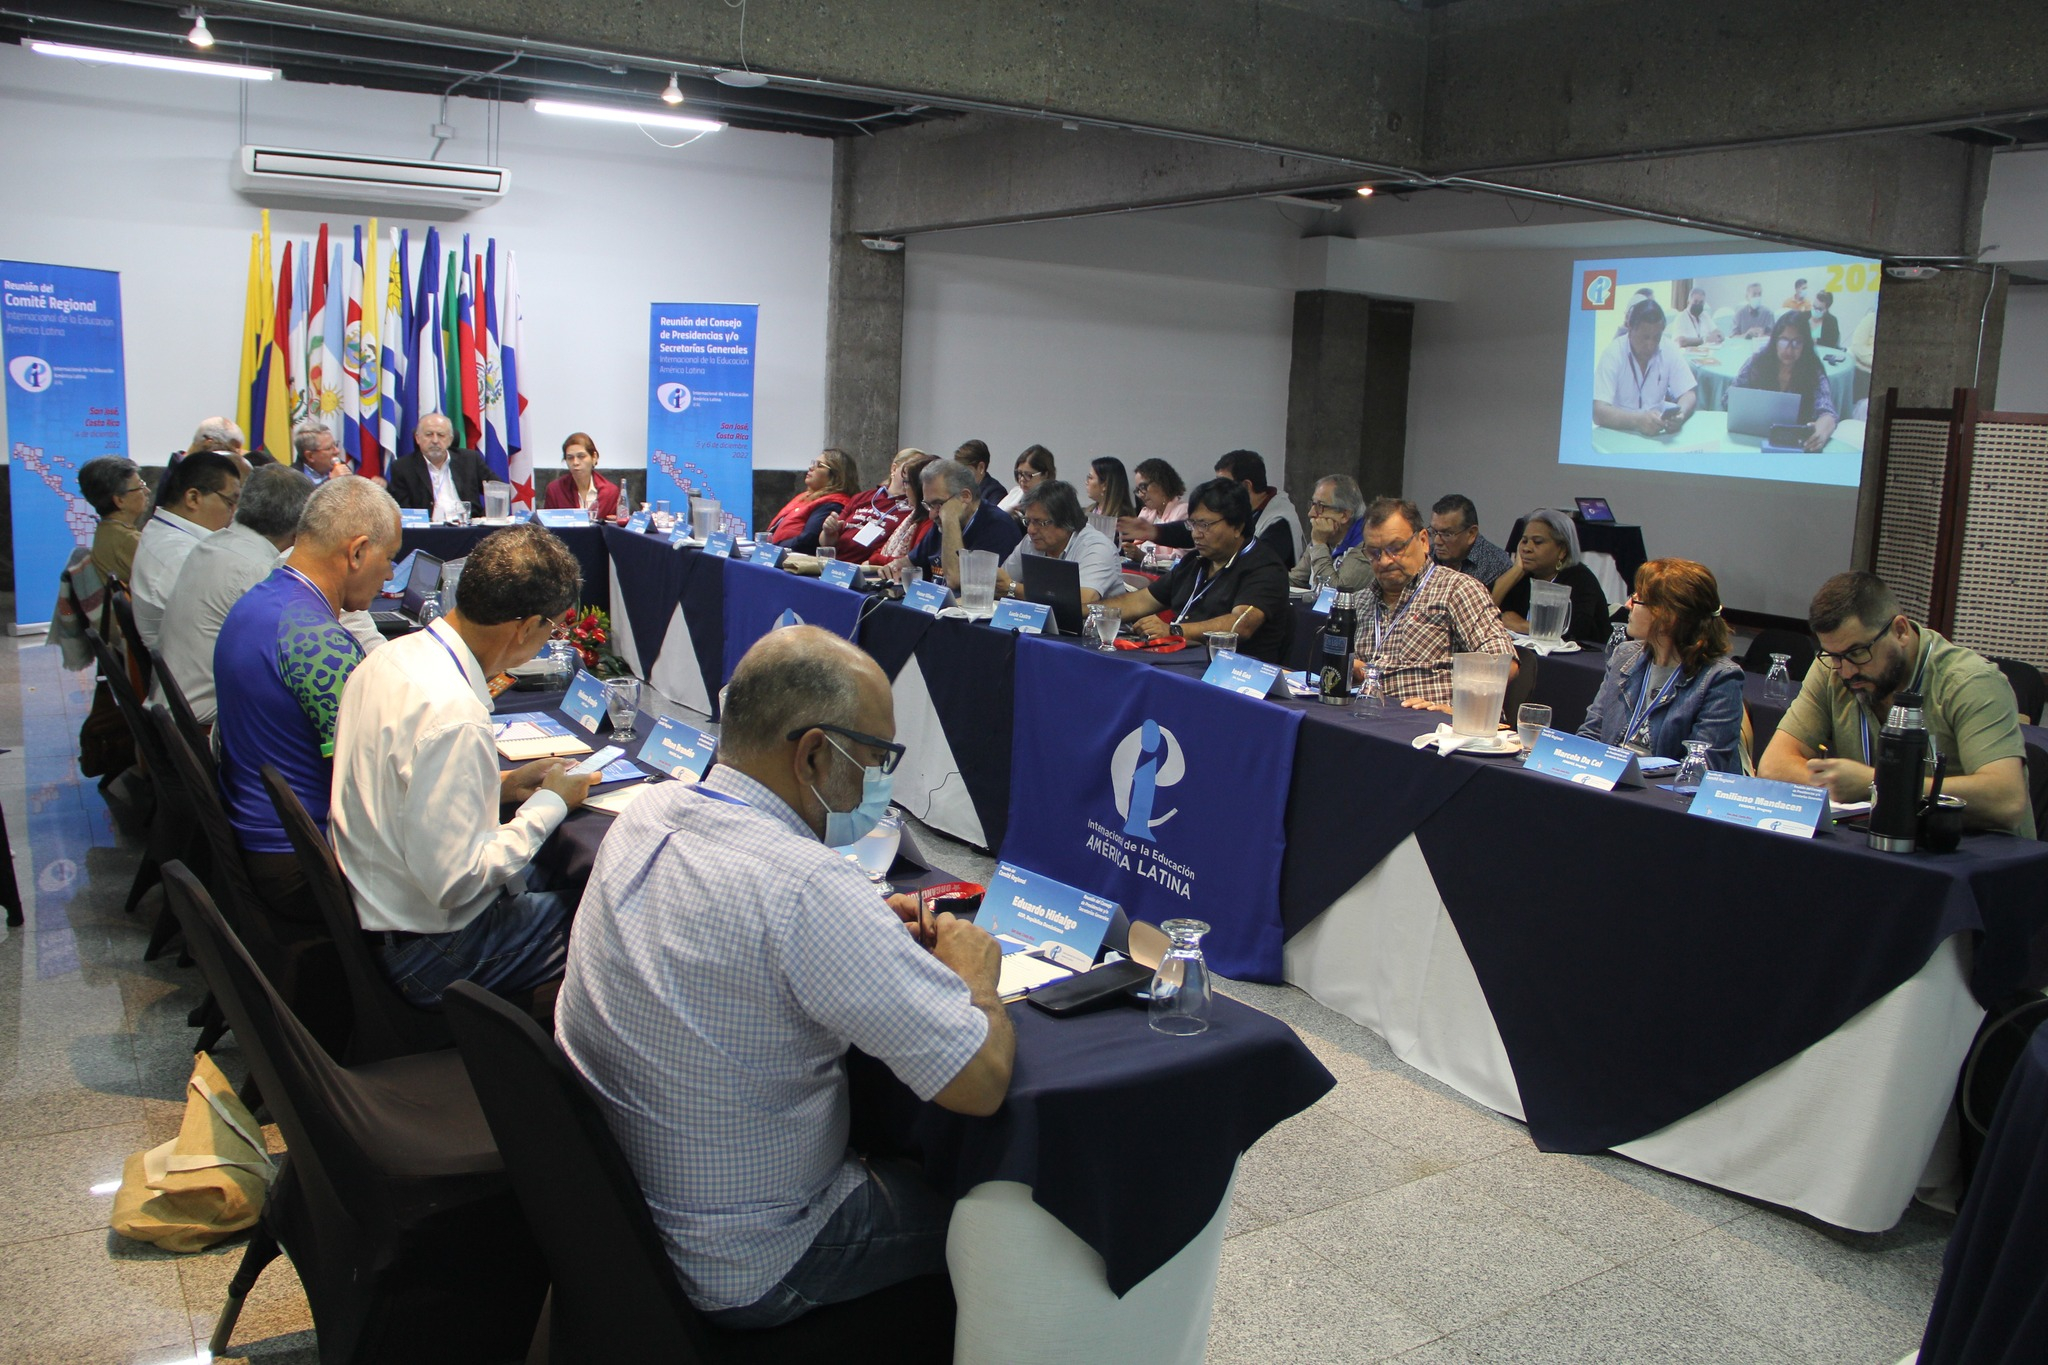 Dirigentes de América Latina dialogan sobre educación pública y el fortalecimiento de las democracias de la región